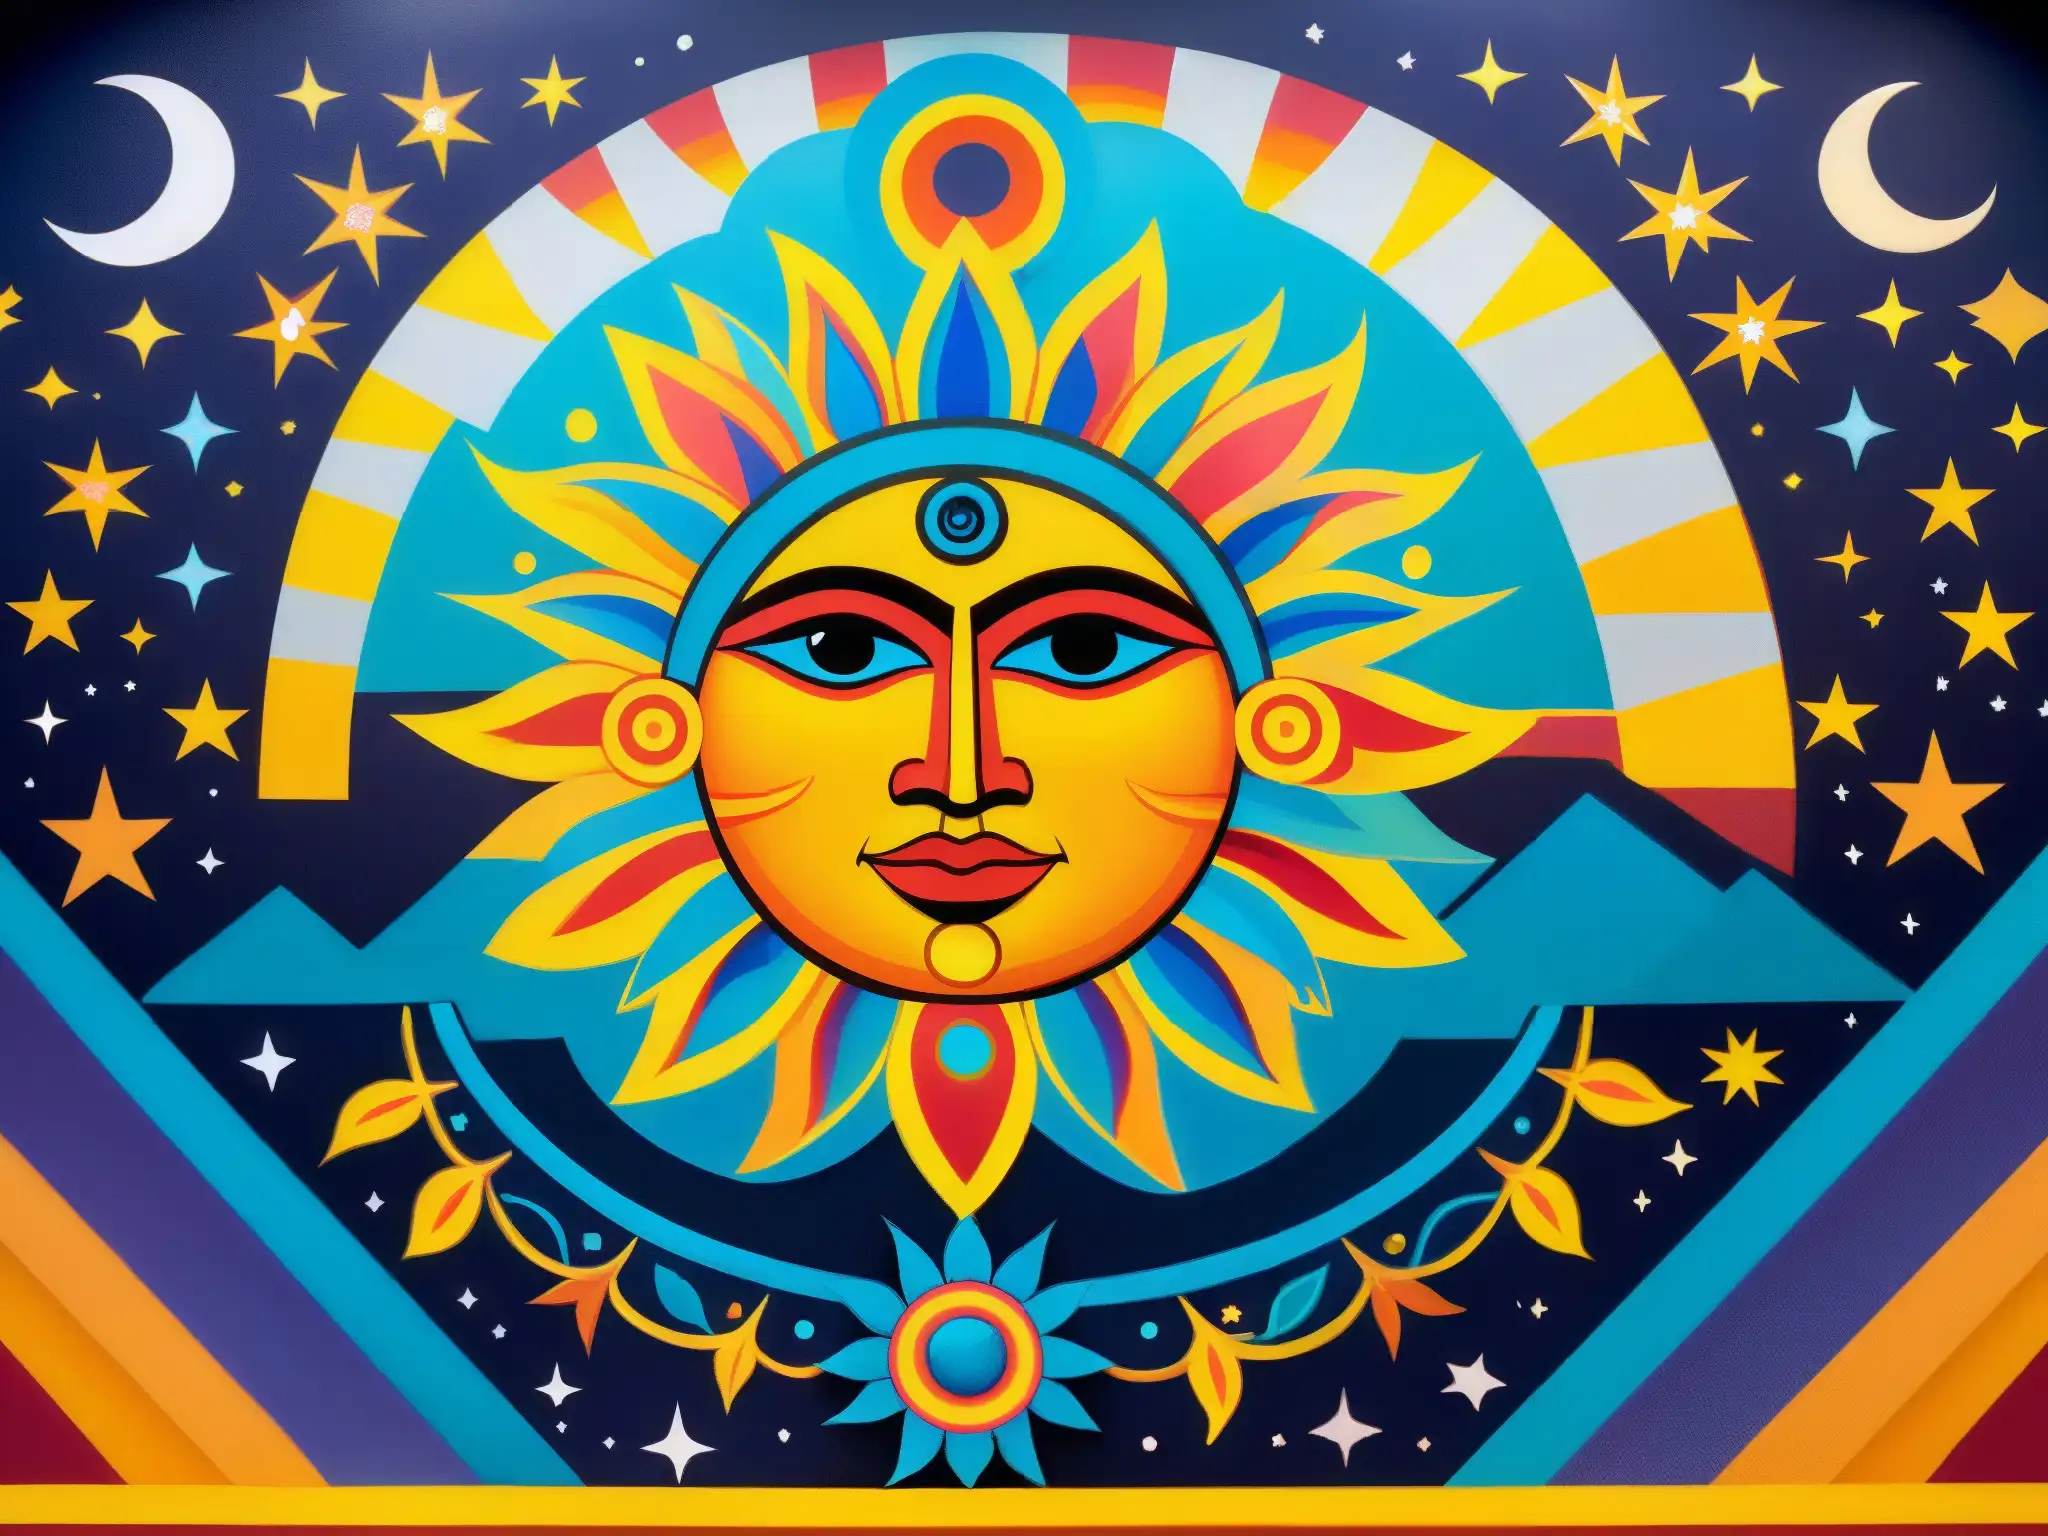 Un mural vibrante que representa la leyenda azteca del sol y la luna, con detalles intrincados que muestran la cosmovisión y romance azteca